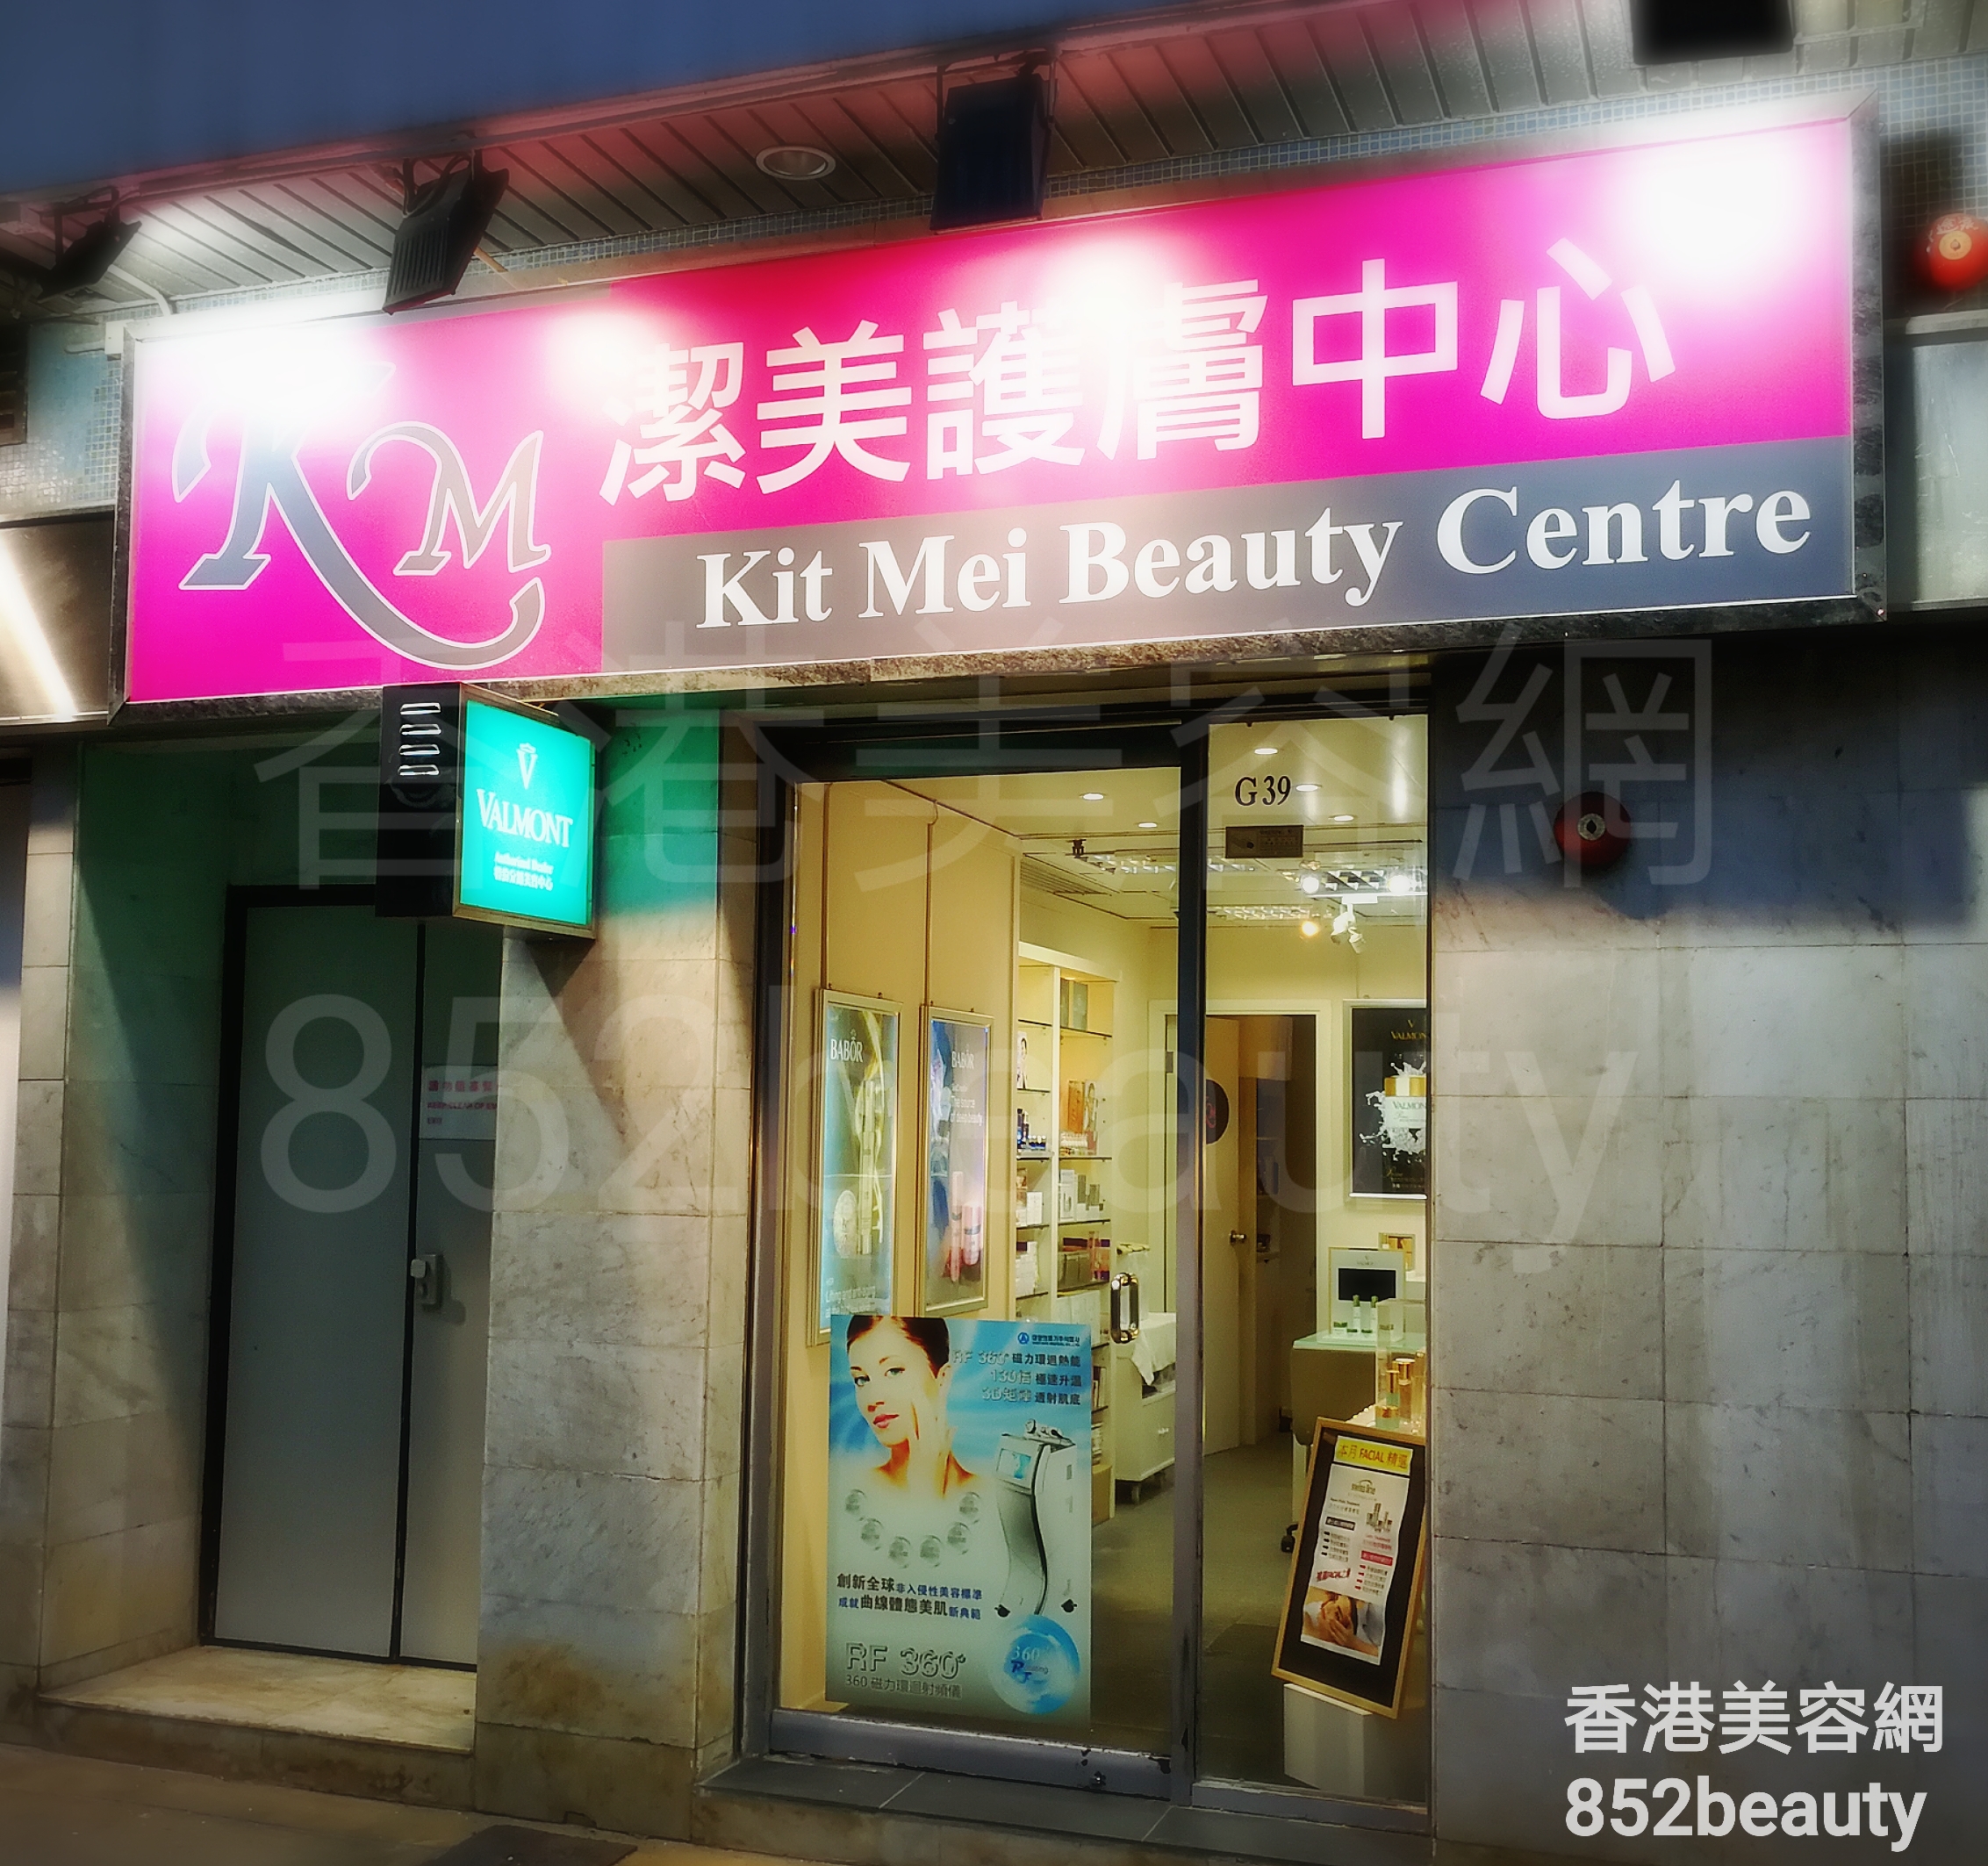 美容院 Beauty Salon: 潔美護膚中心